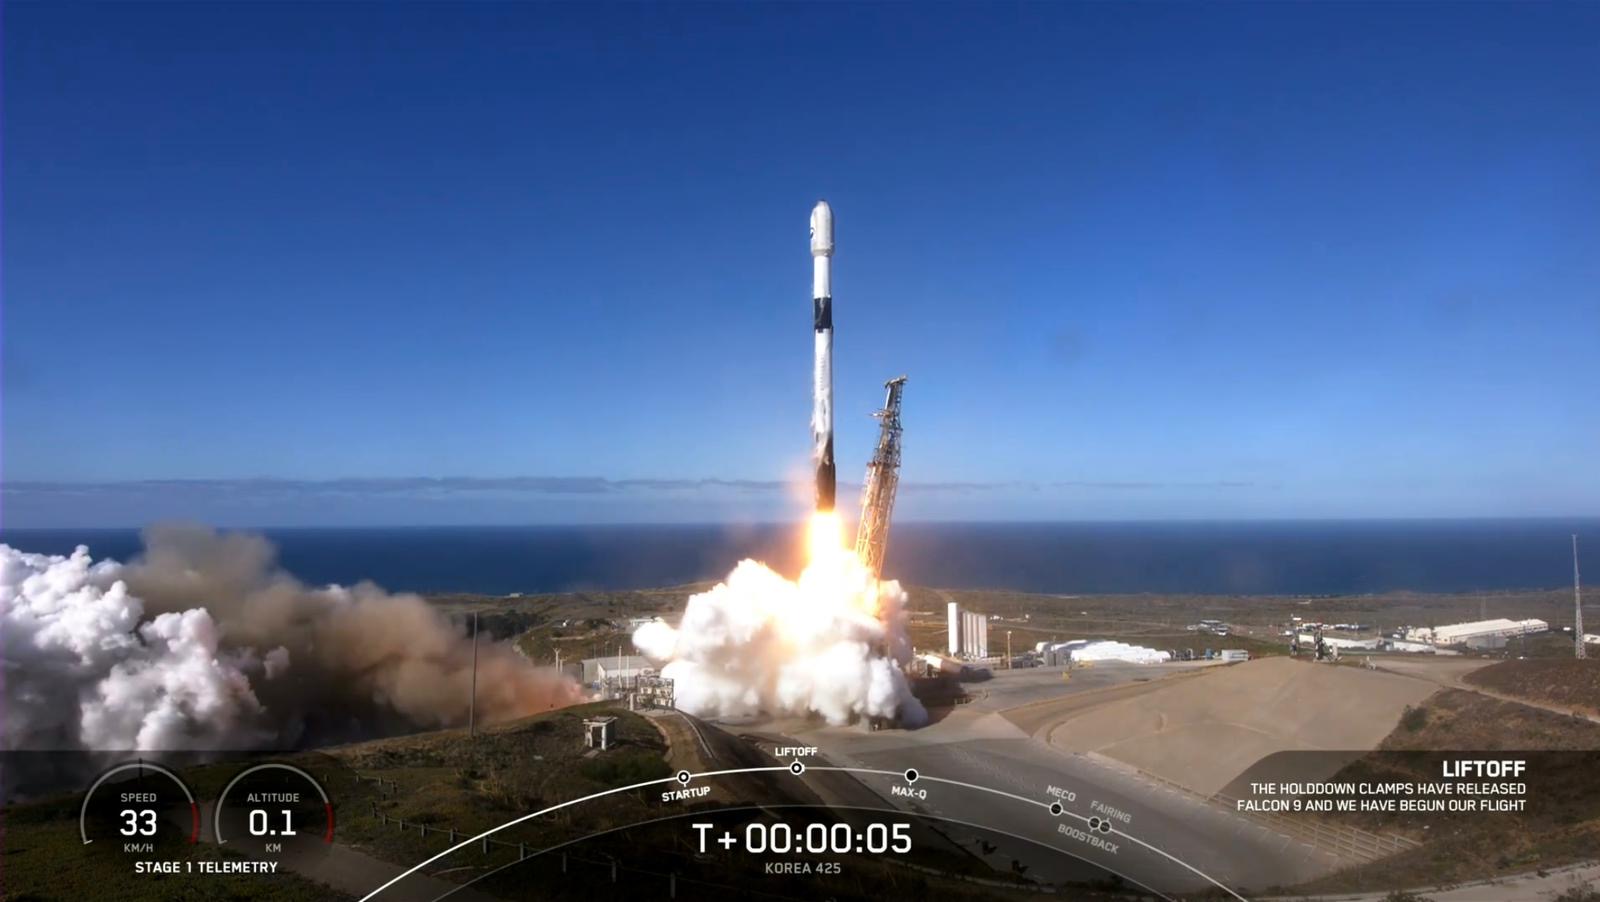 Liście!  Wystrzelenie nanosatelity SpIRIT na pokładzie rakiety SpaceX